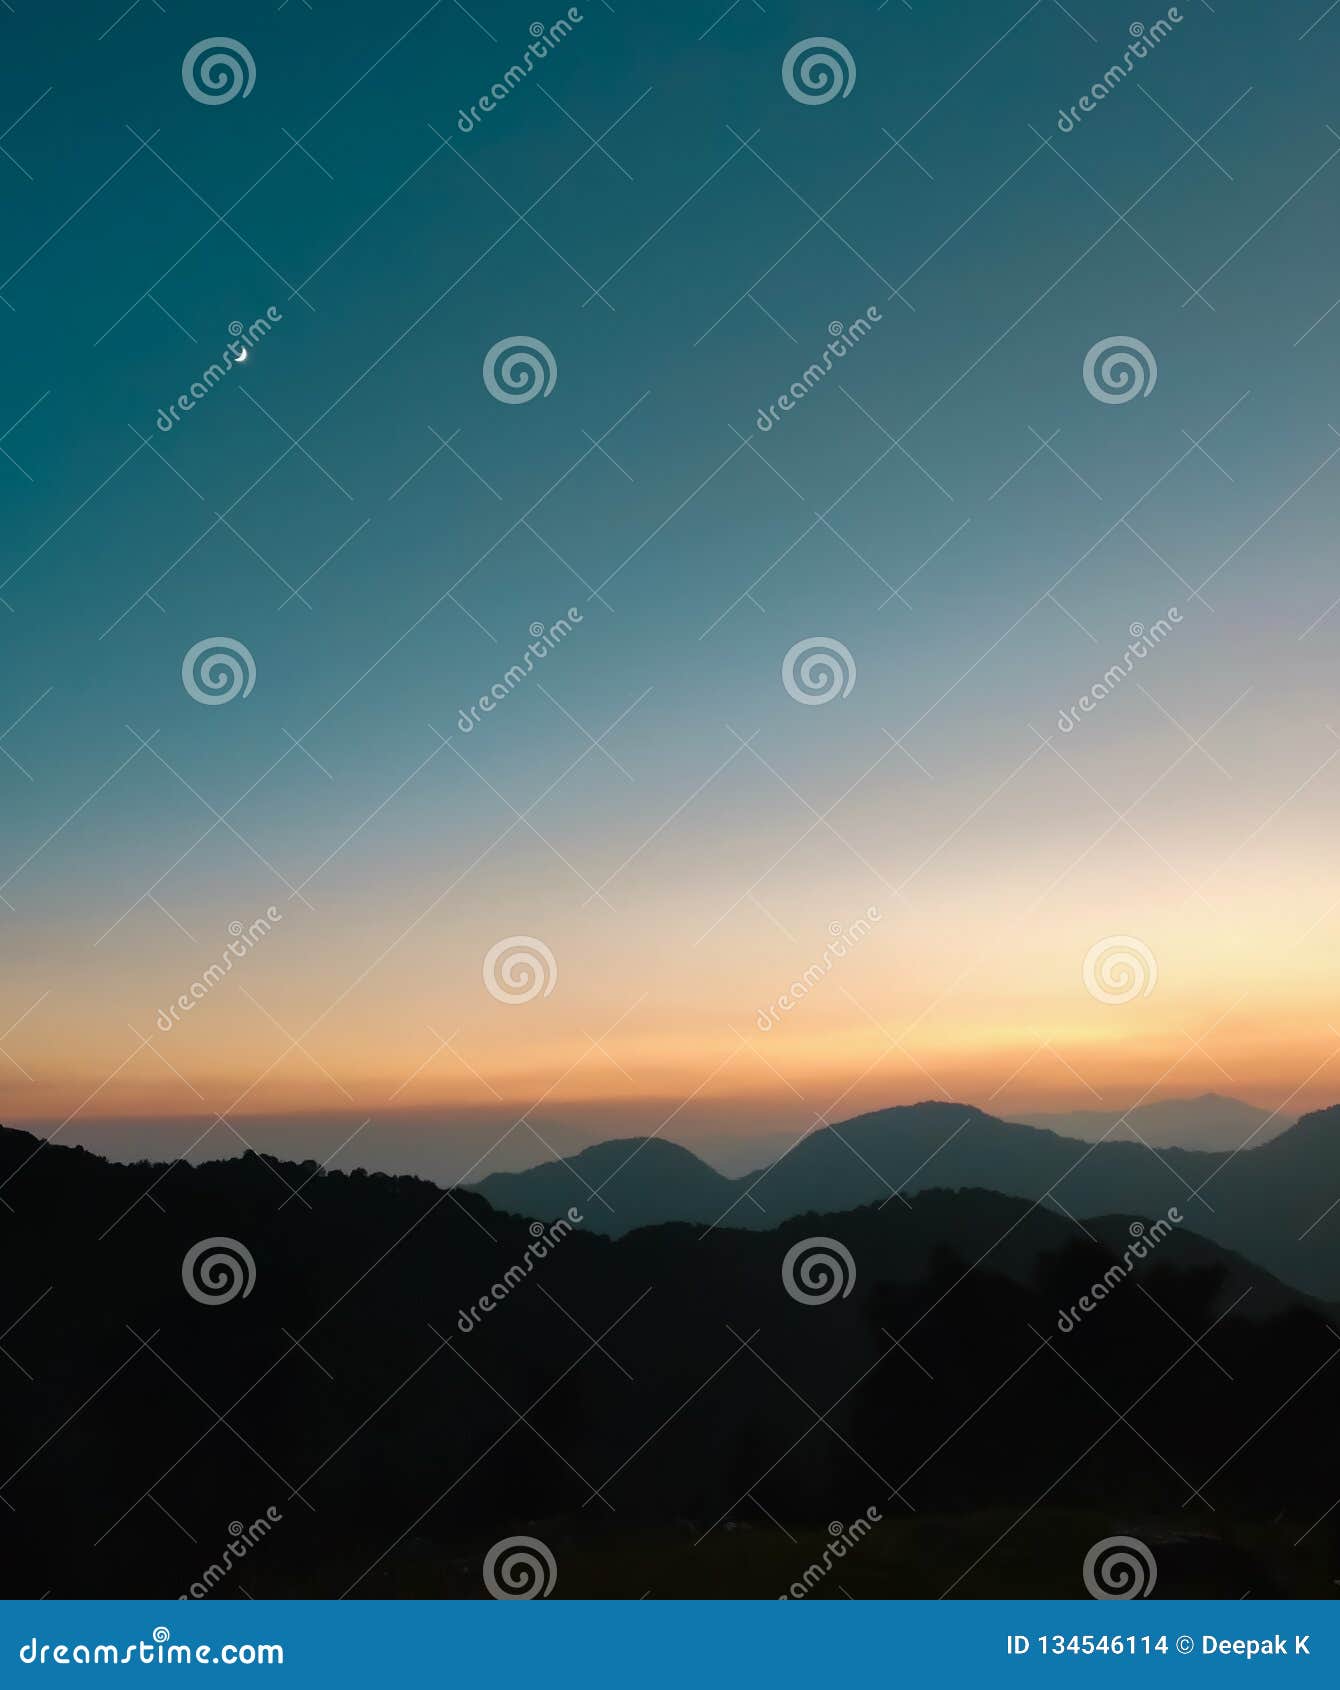 Por do sol bonito do sunrise/. Um por do sol/nascer do sol calmos e coloridos dos himalayas que compõem uma paisagem sereno com os montes e os cumes mergulhados